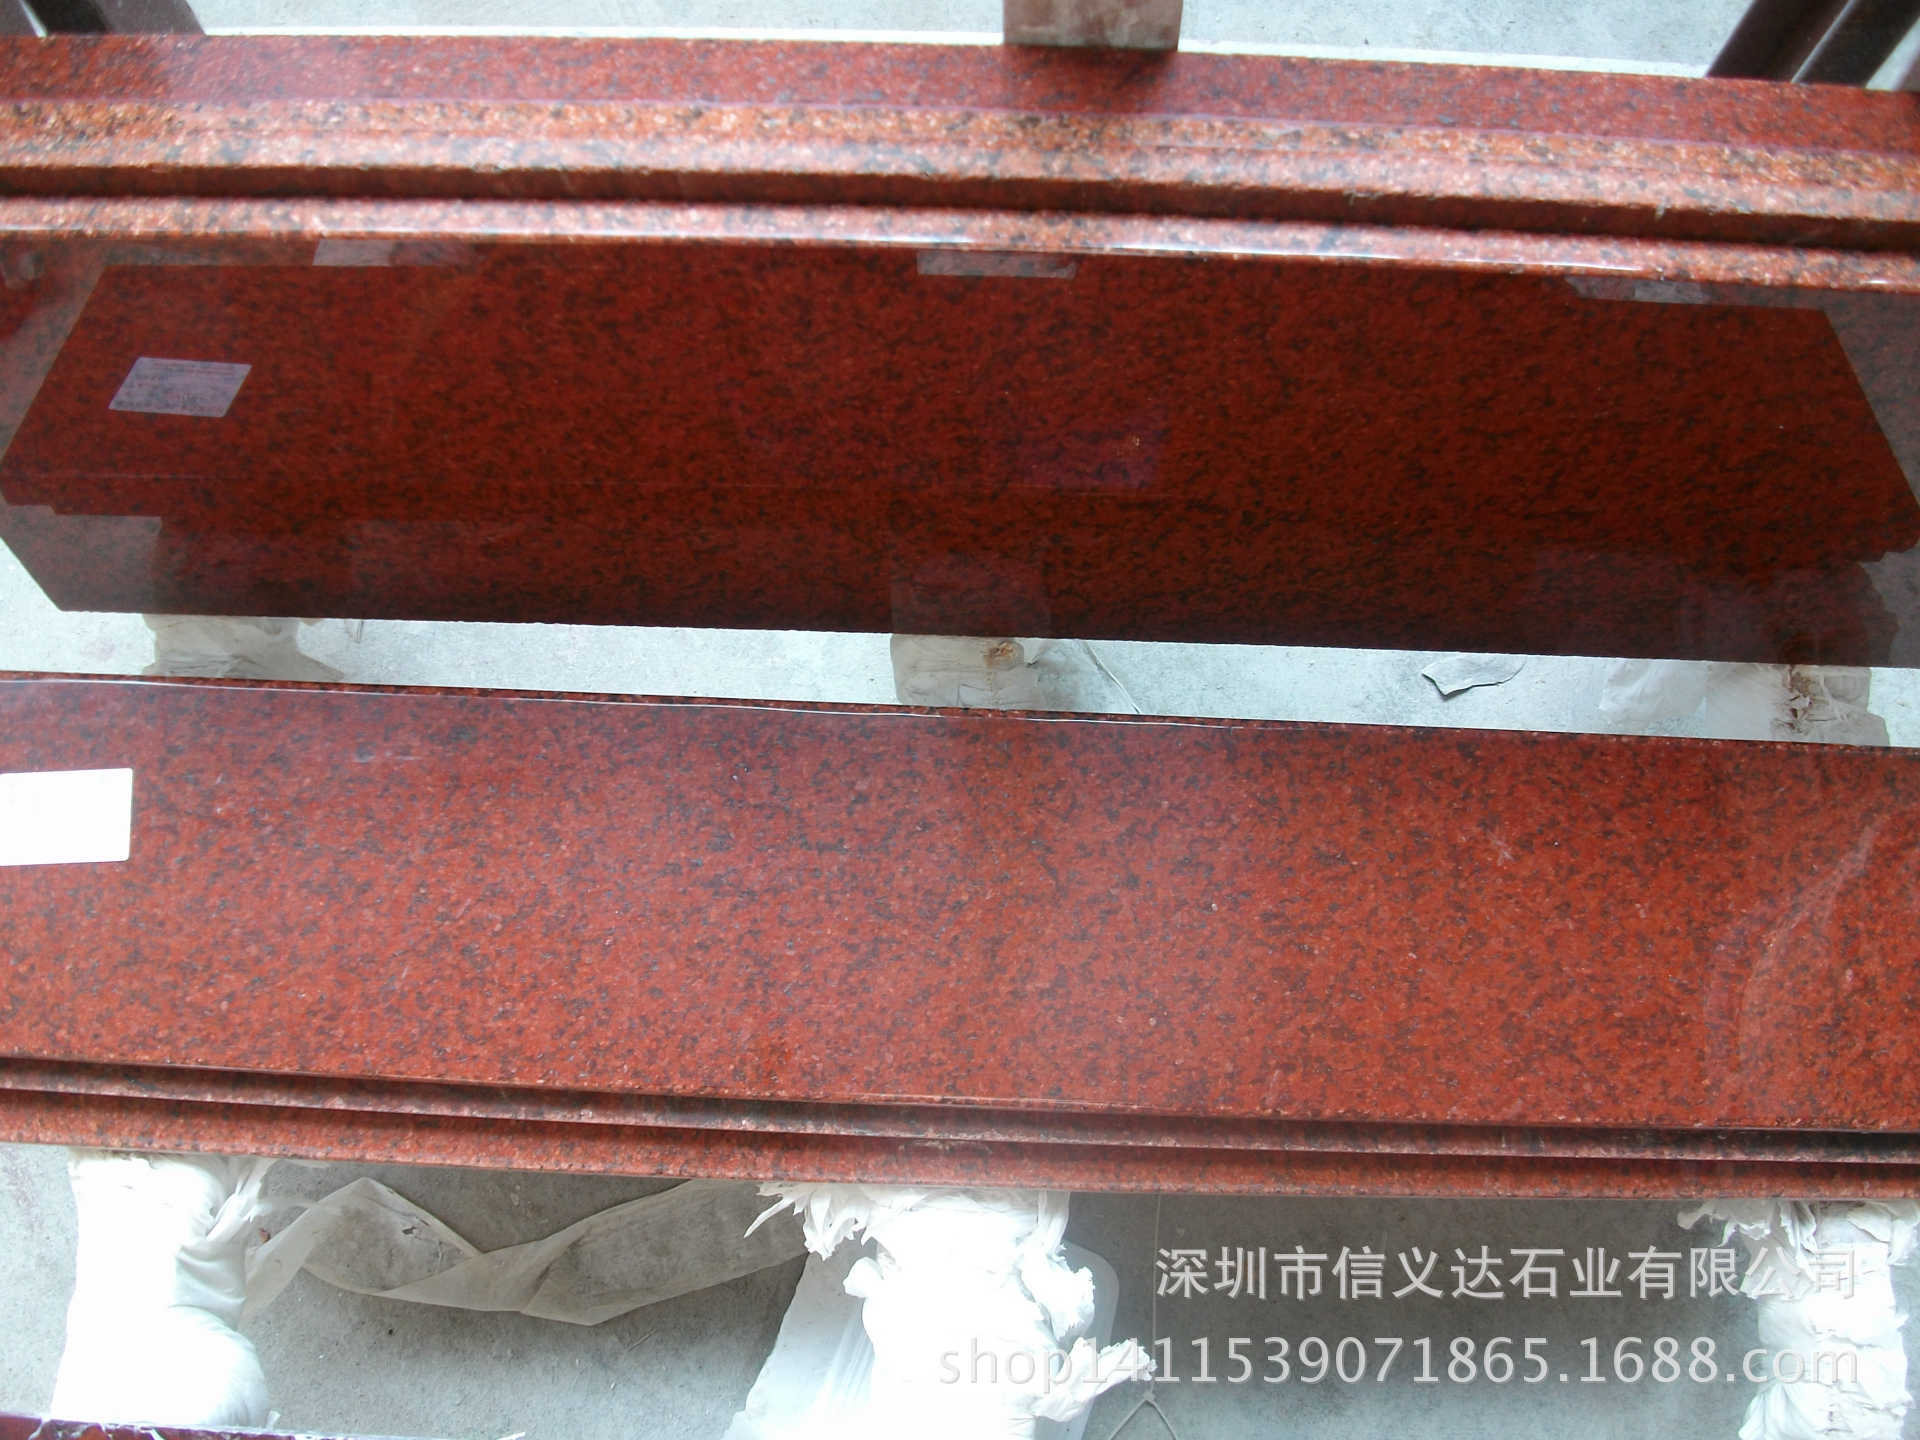 中国红天然大理石花岗岩飘窗台面石材线条楼梯踏步门槛石